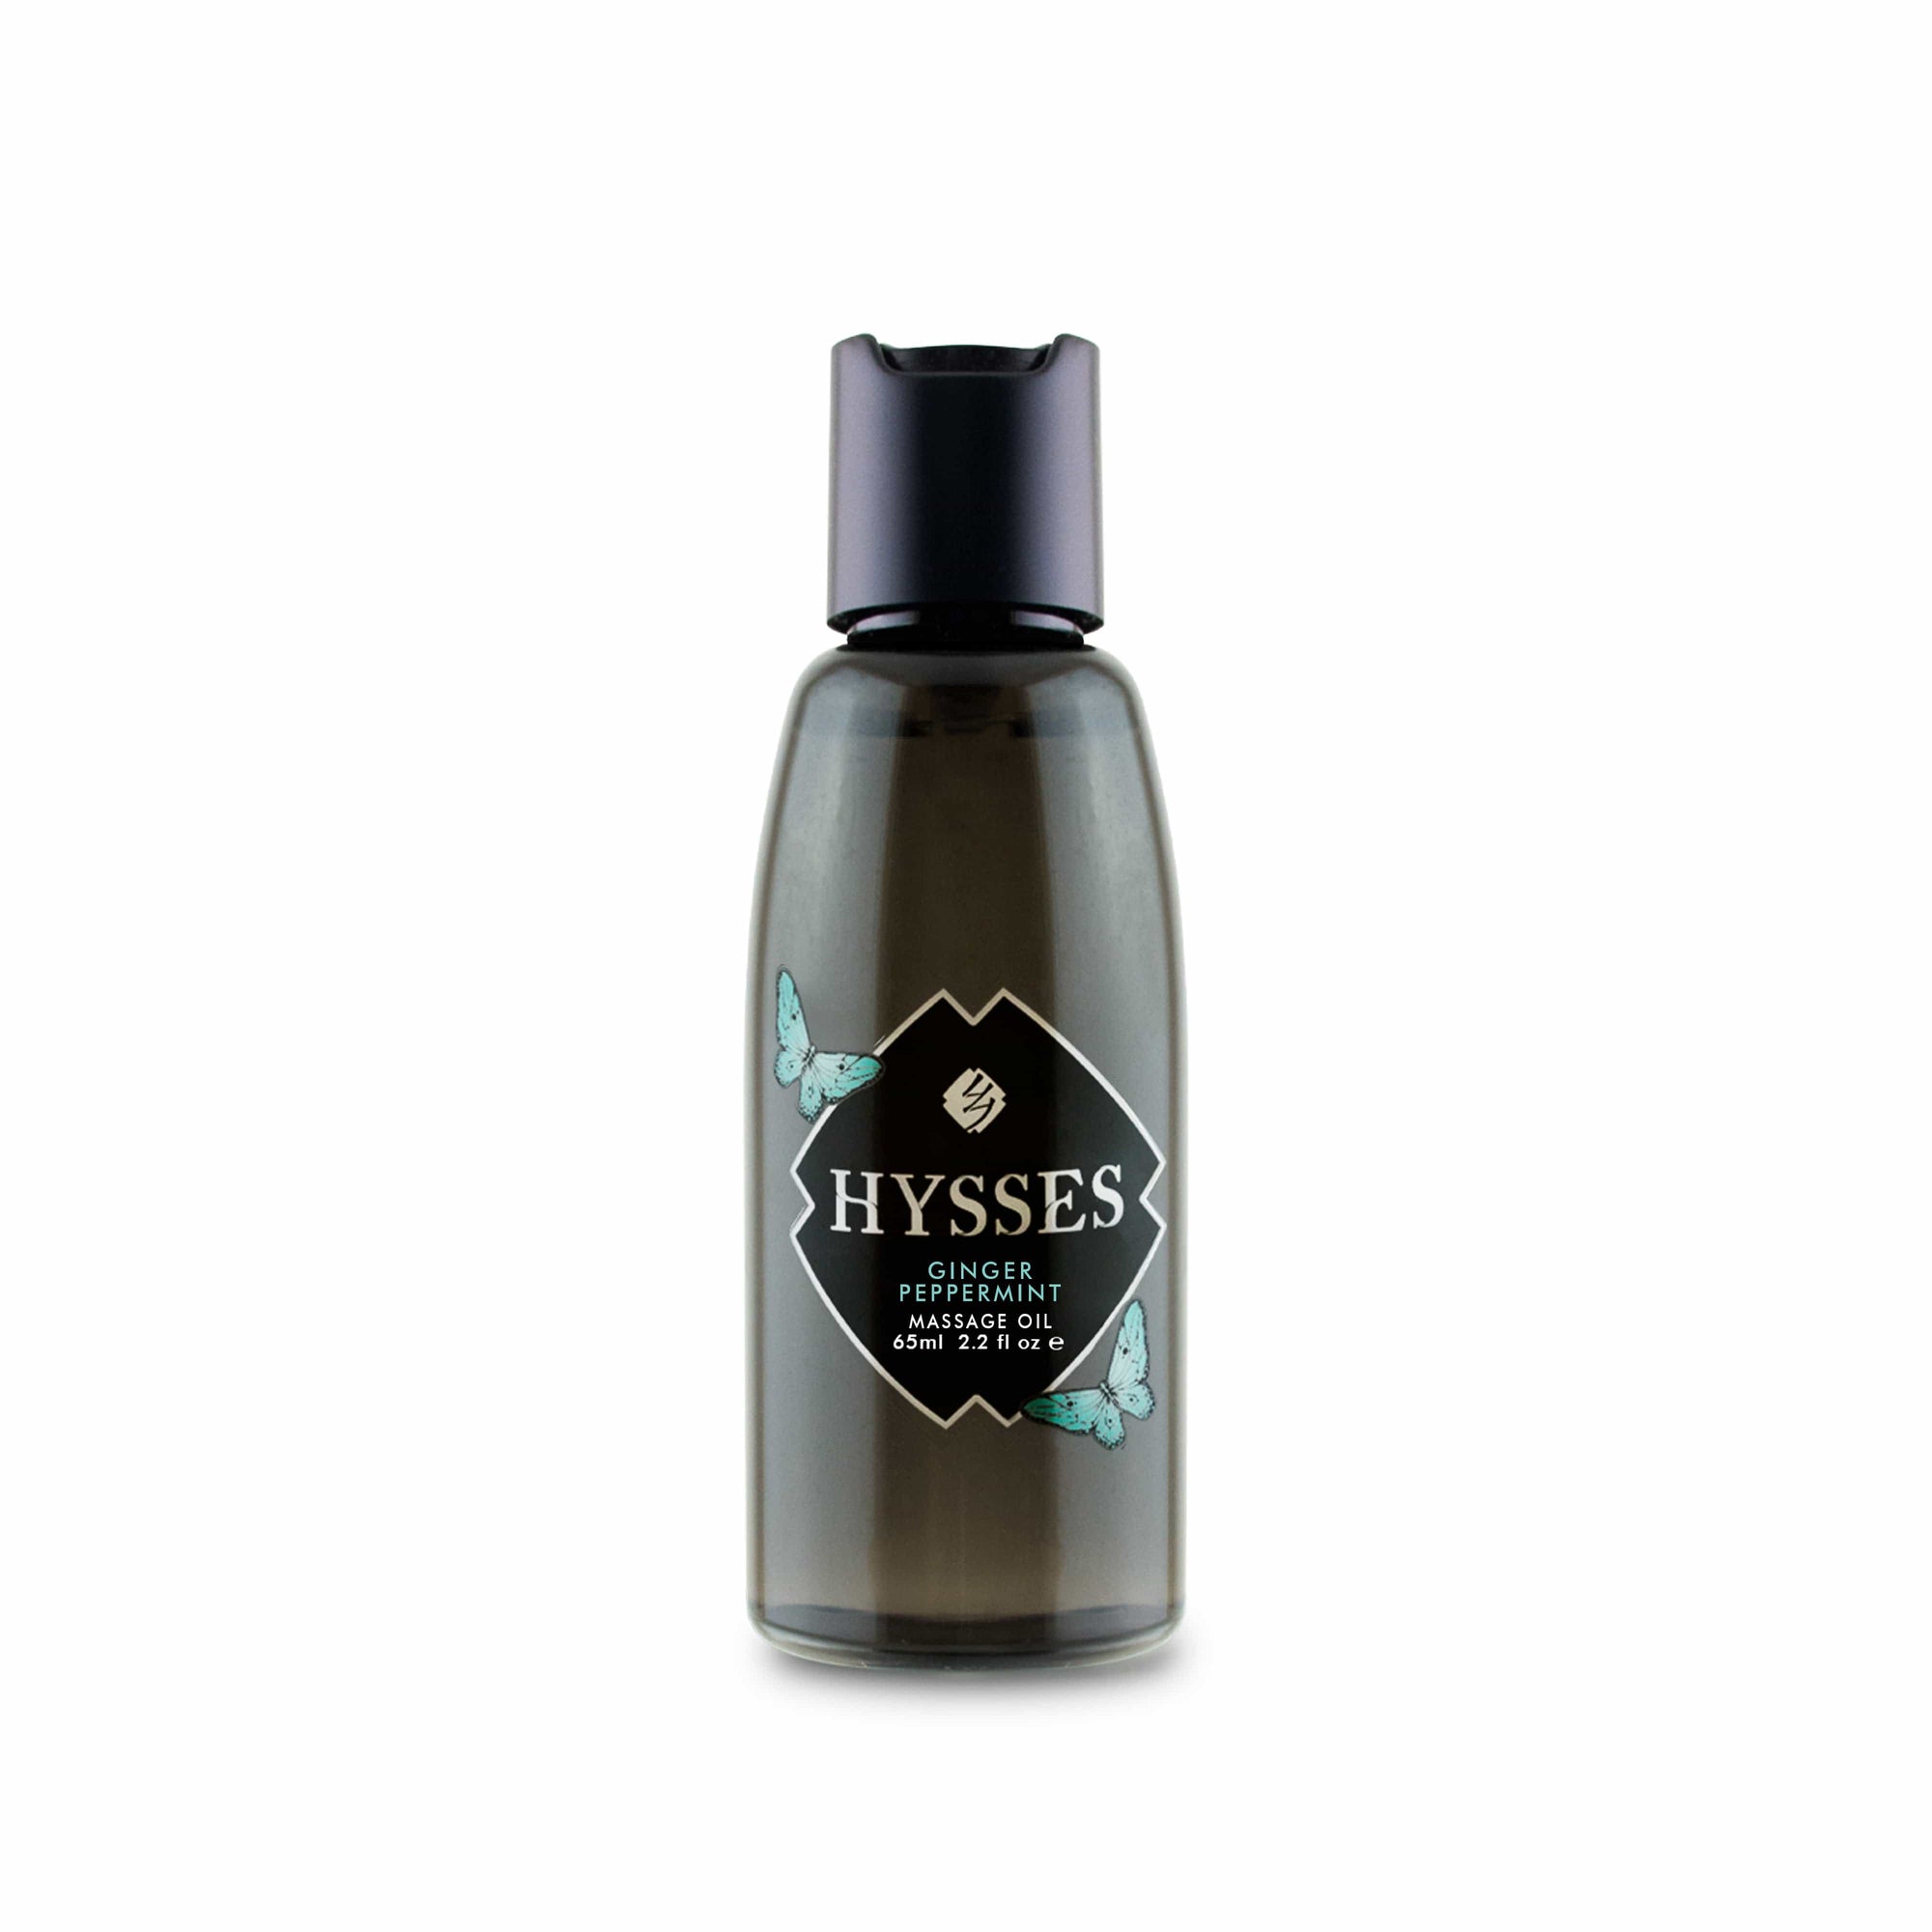 Hysses Body Care Massage Oil Ginger Peppermint, 65ml